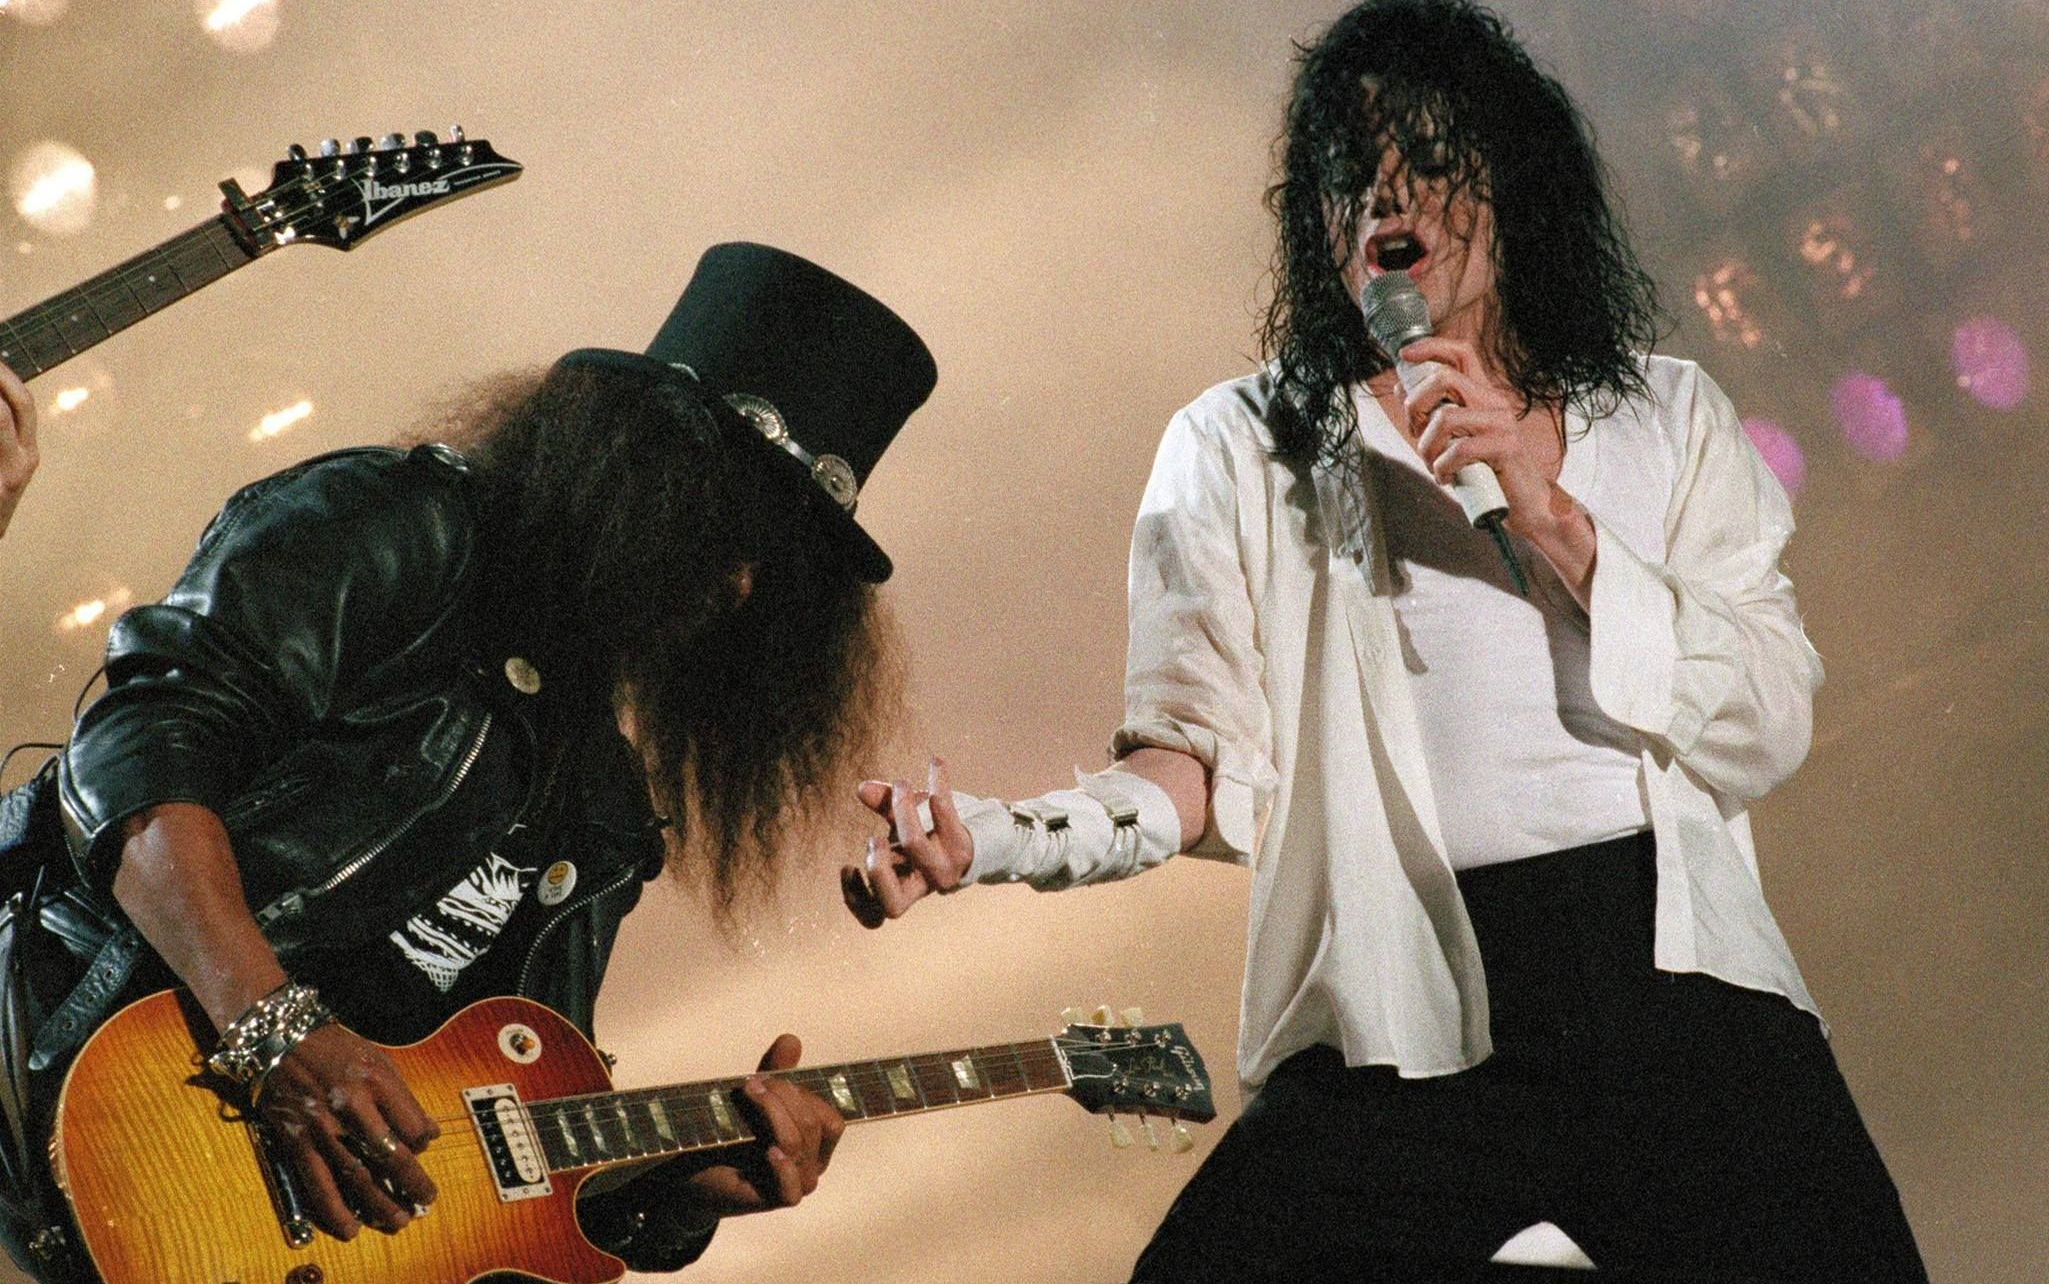 【尘时光影像】杰克逊与Slash同台狂飙《Black or white》现场 音乐史经典时刻